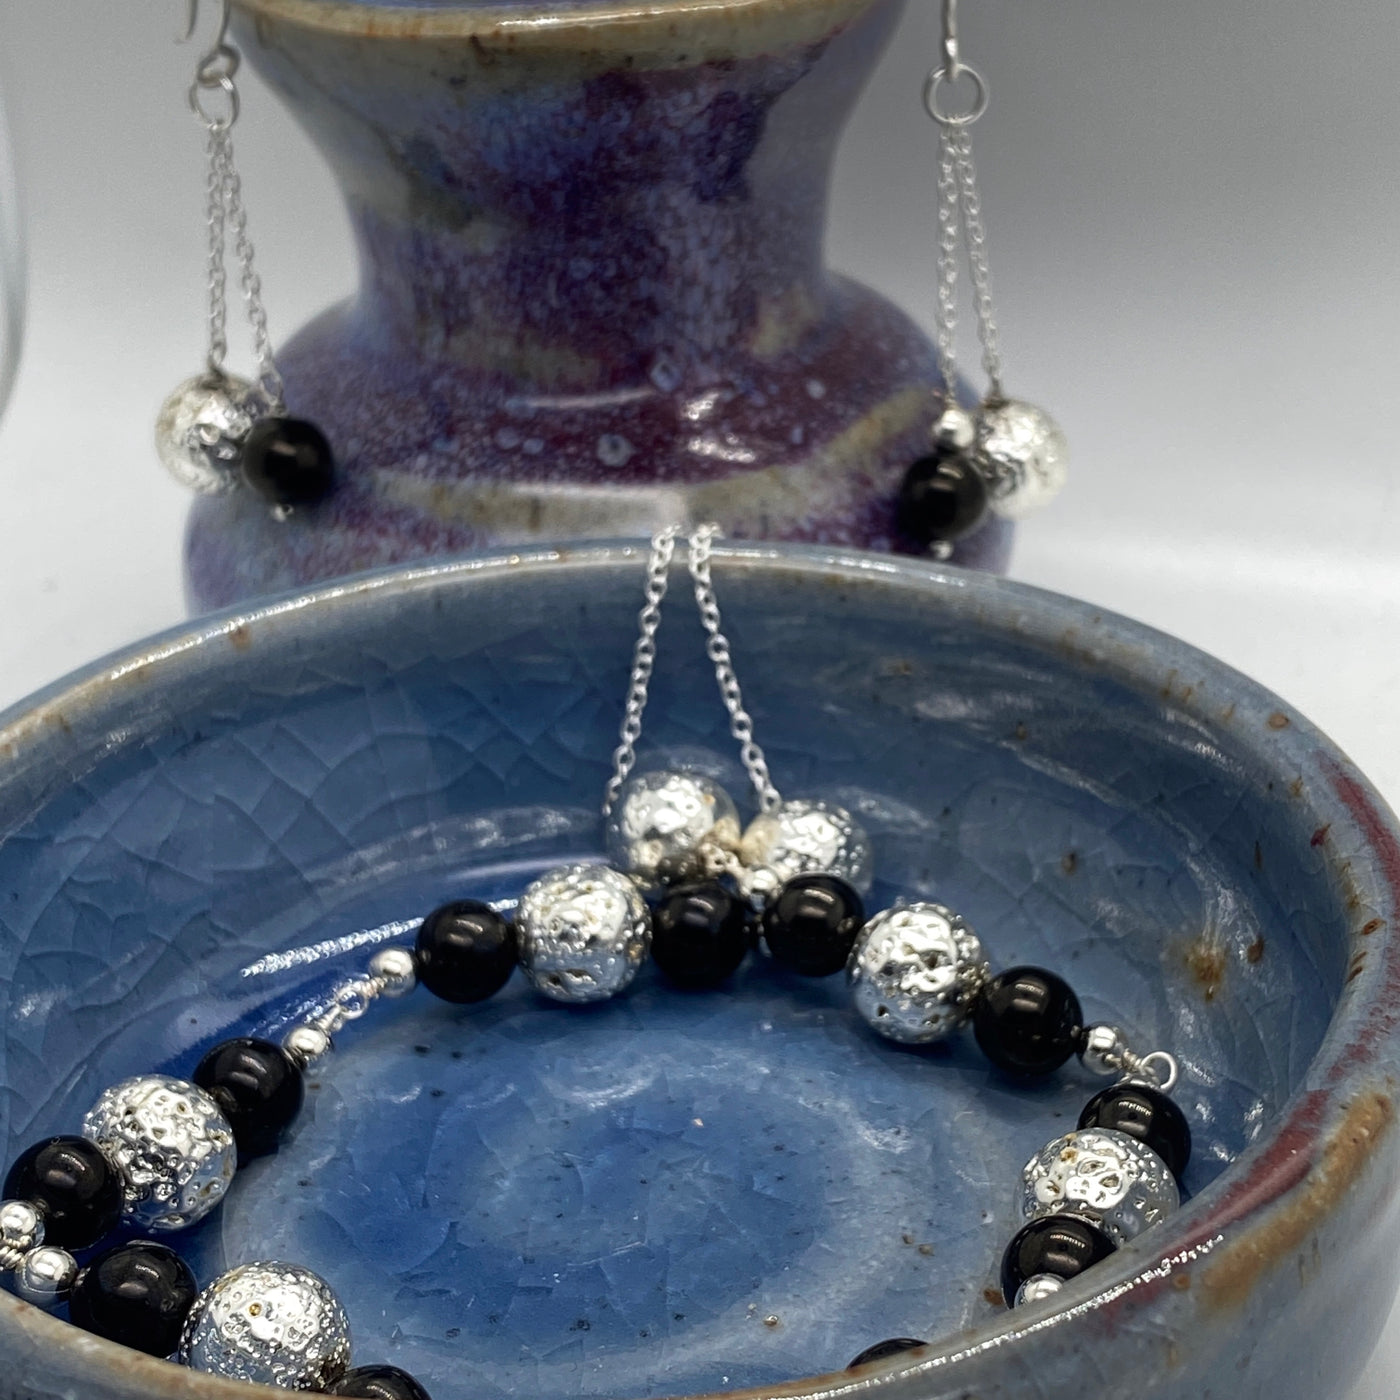 Perles de lave en argent et perles noires de jais de 8 mm sur chaîne.